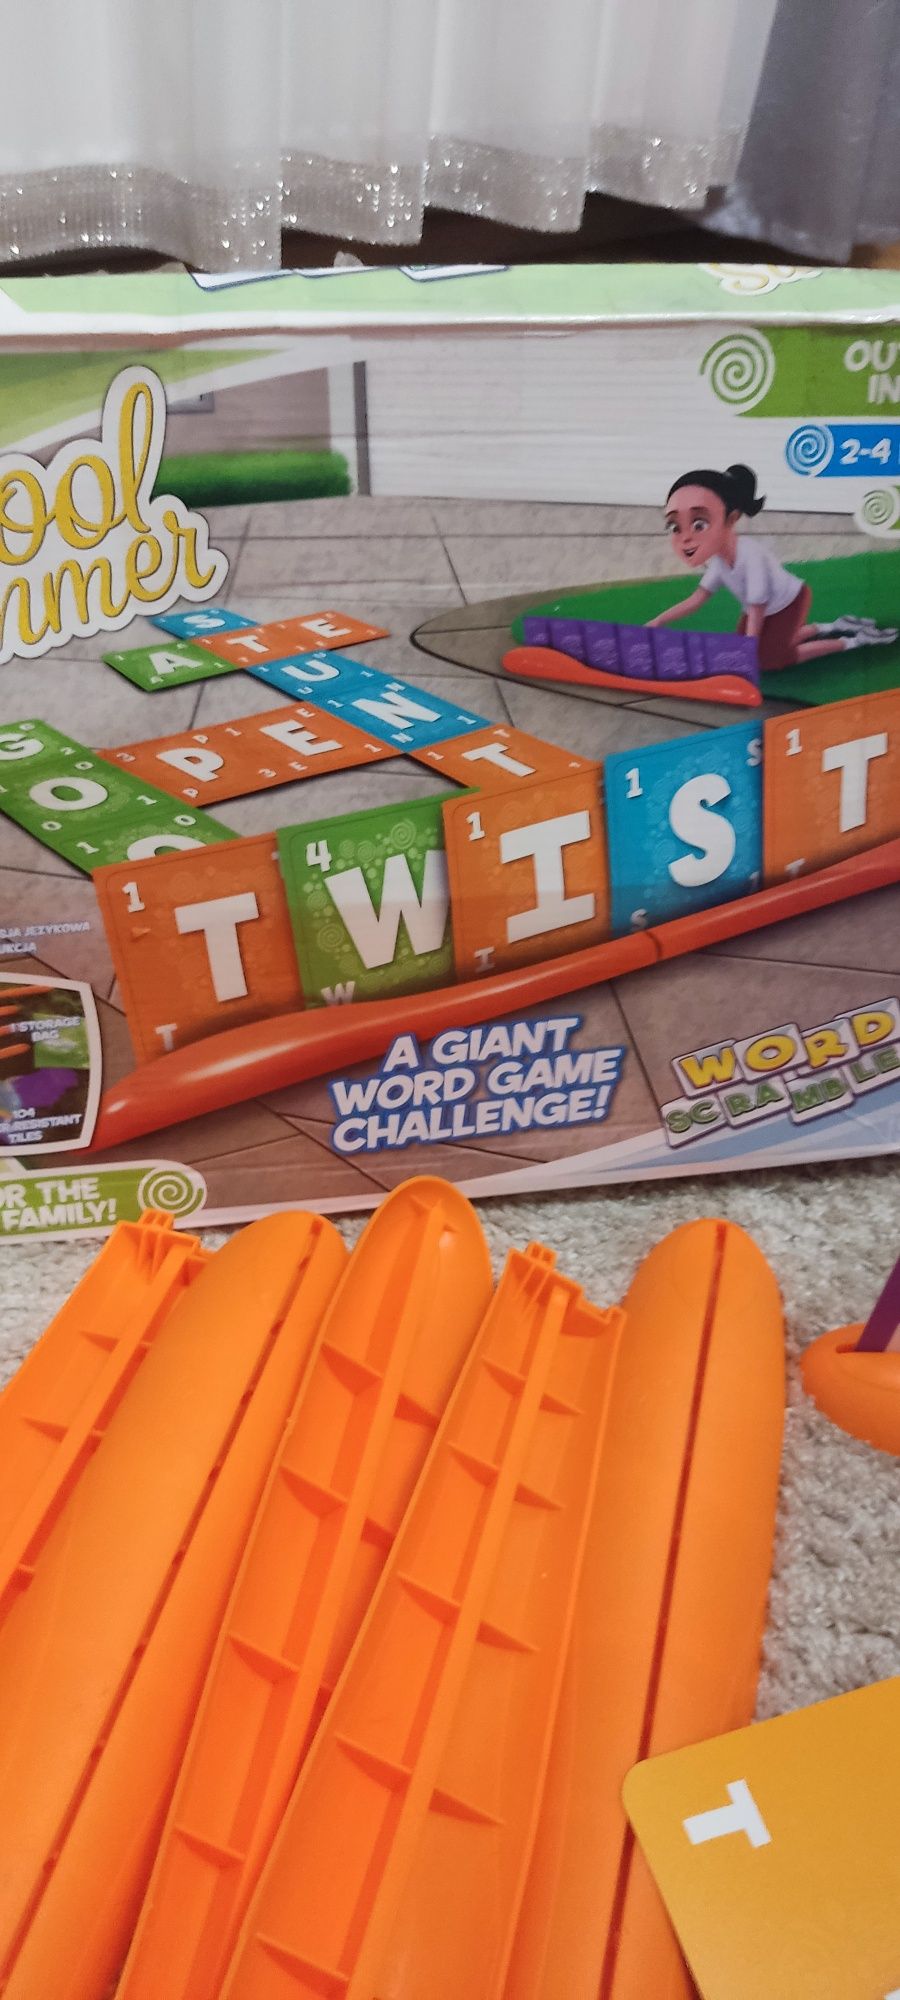 Sprzedam dużą grę Scrabble Twist